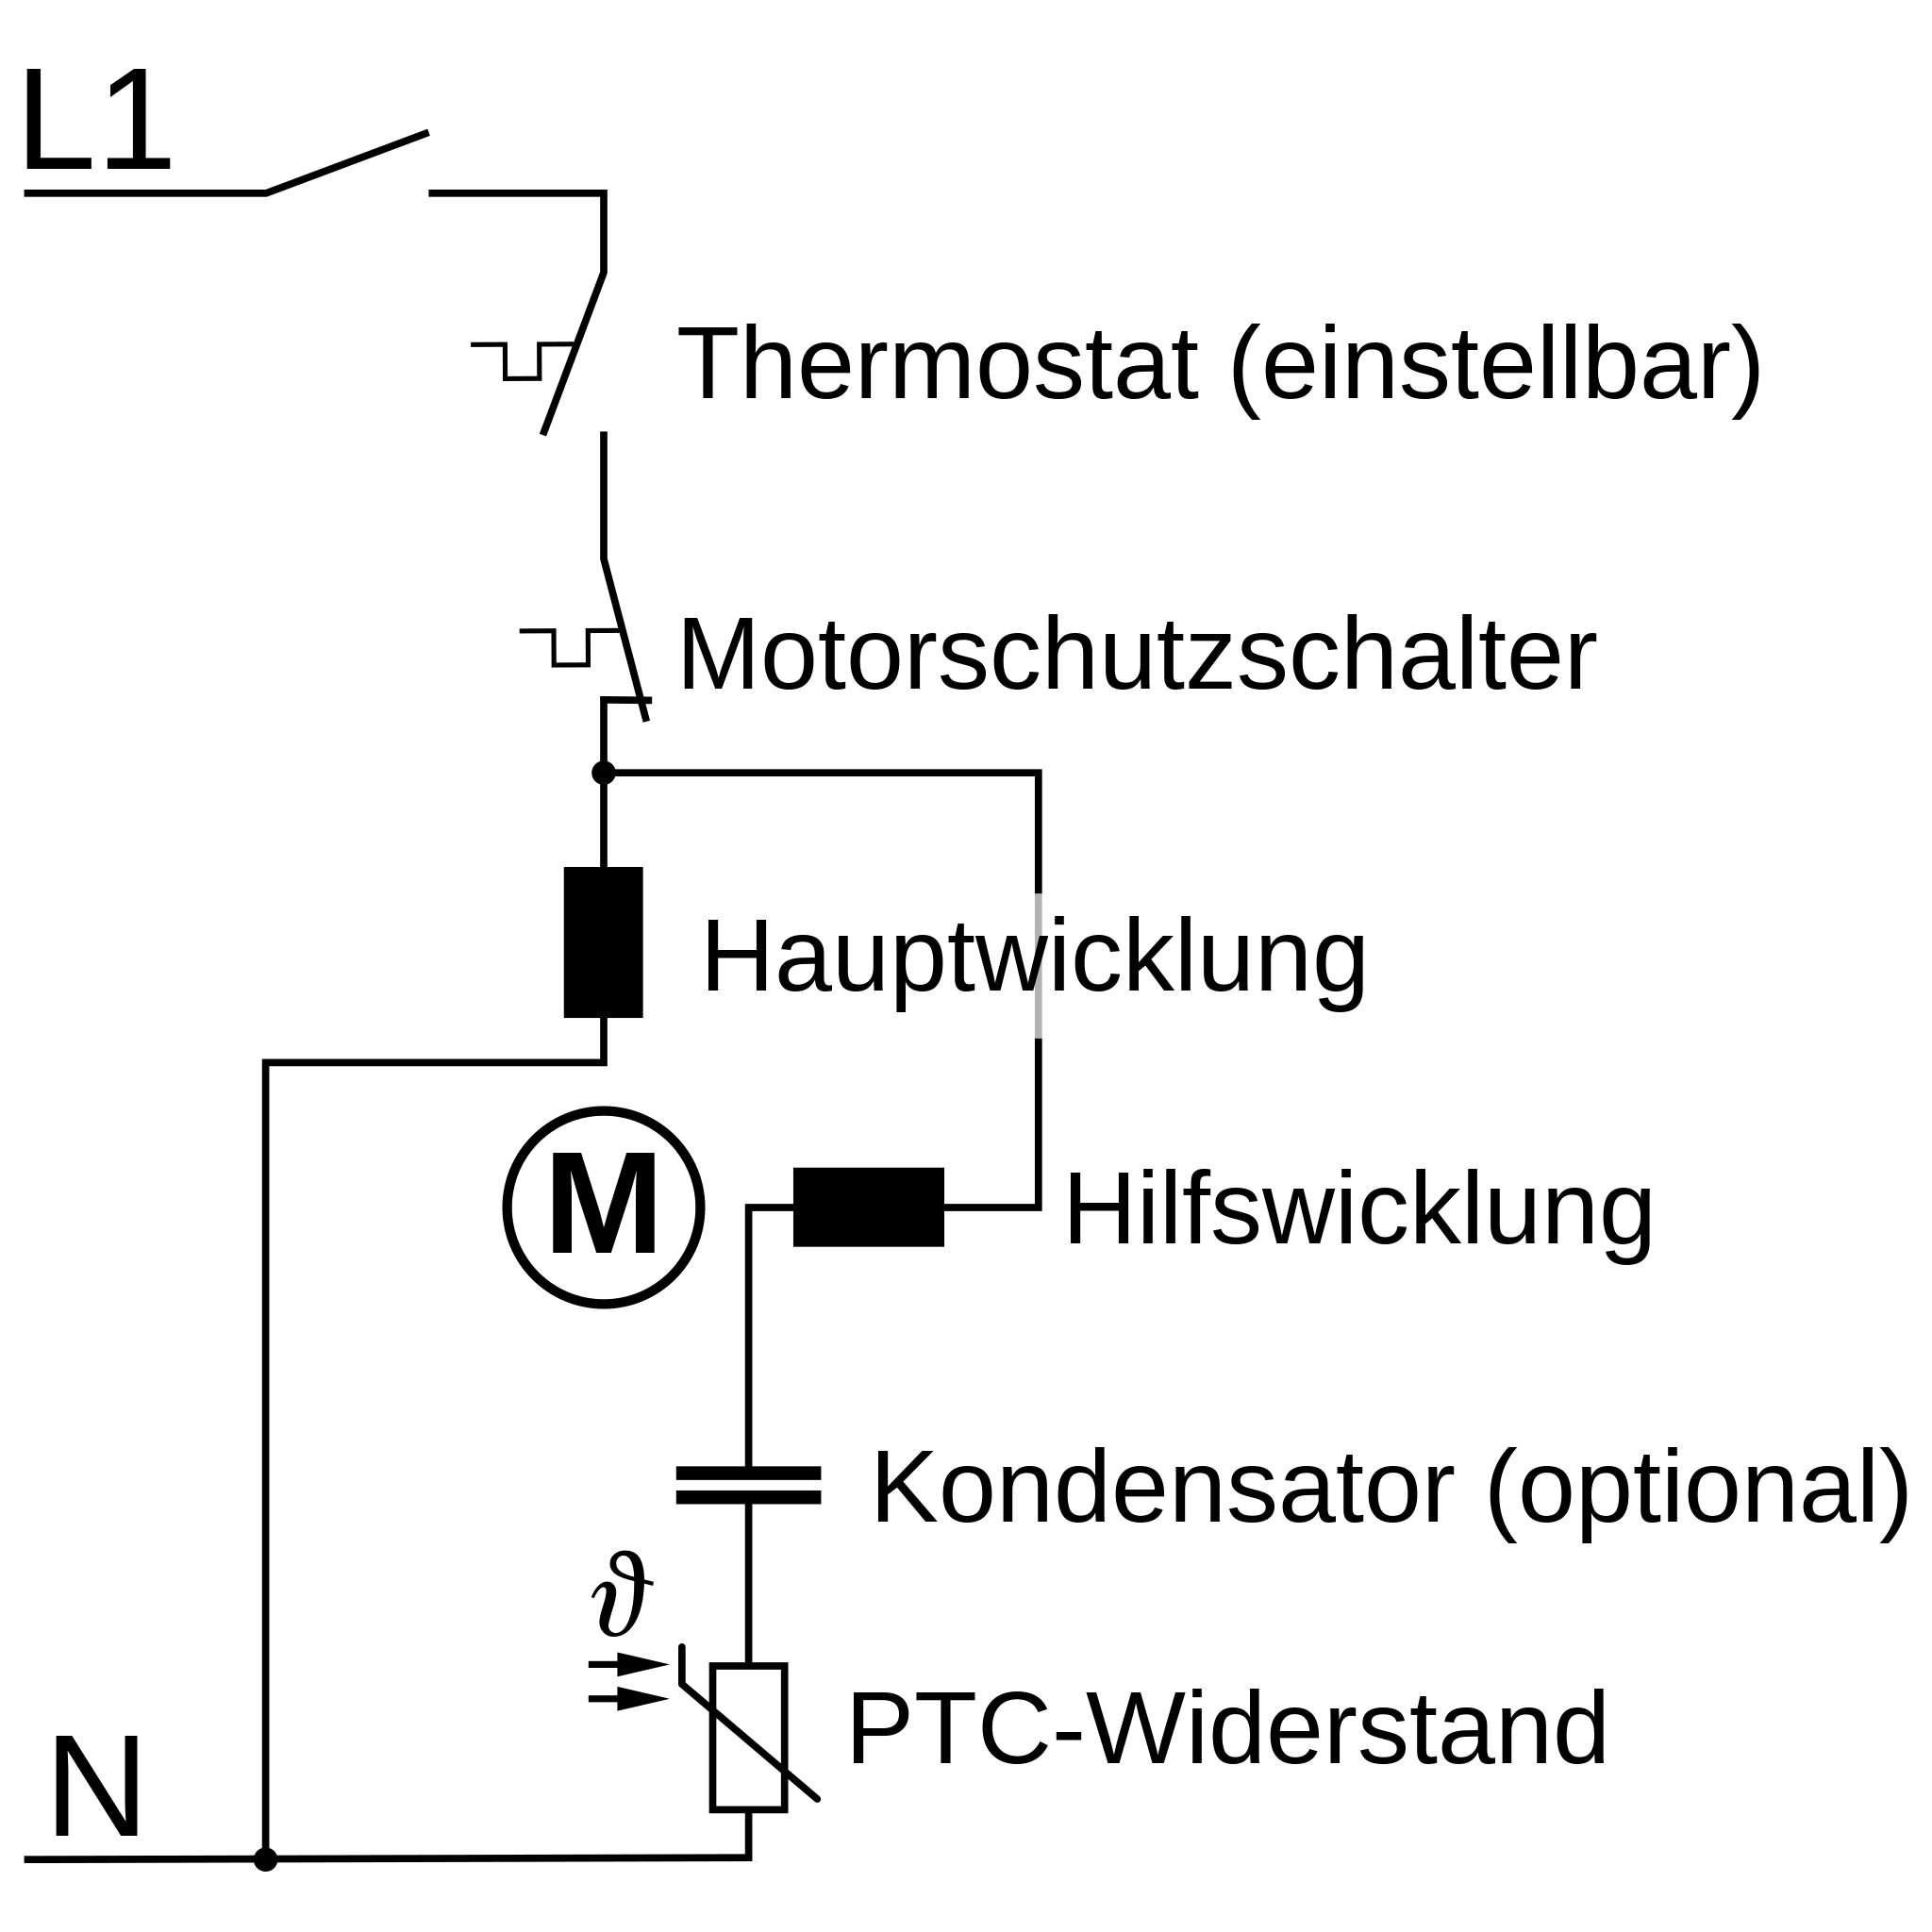 File:Anlassvorrichtung-einphasen-asynchronmotor.svg - Wikimedia